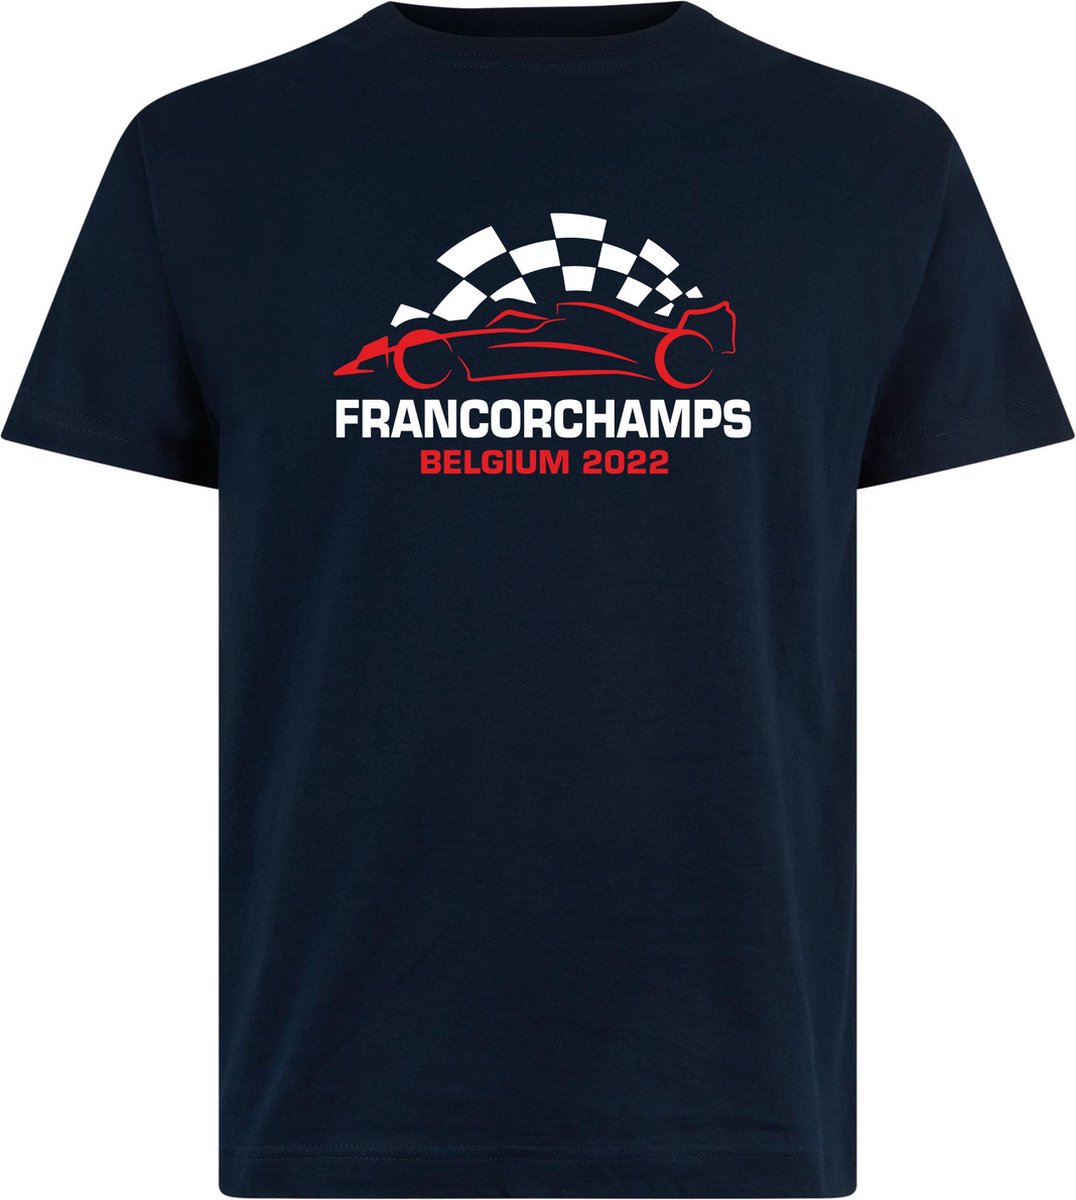 T-shirt kinderen Francorchamps Belgium 2022 met raceauto | Max Verstappen / Red Bull Racing / Formule 1 fan | Grand Prix Circuit Spa-Francorchamps | kleding shirt | Navy | maat 68